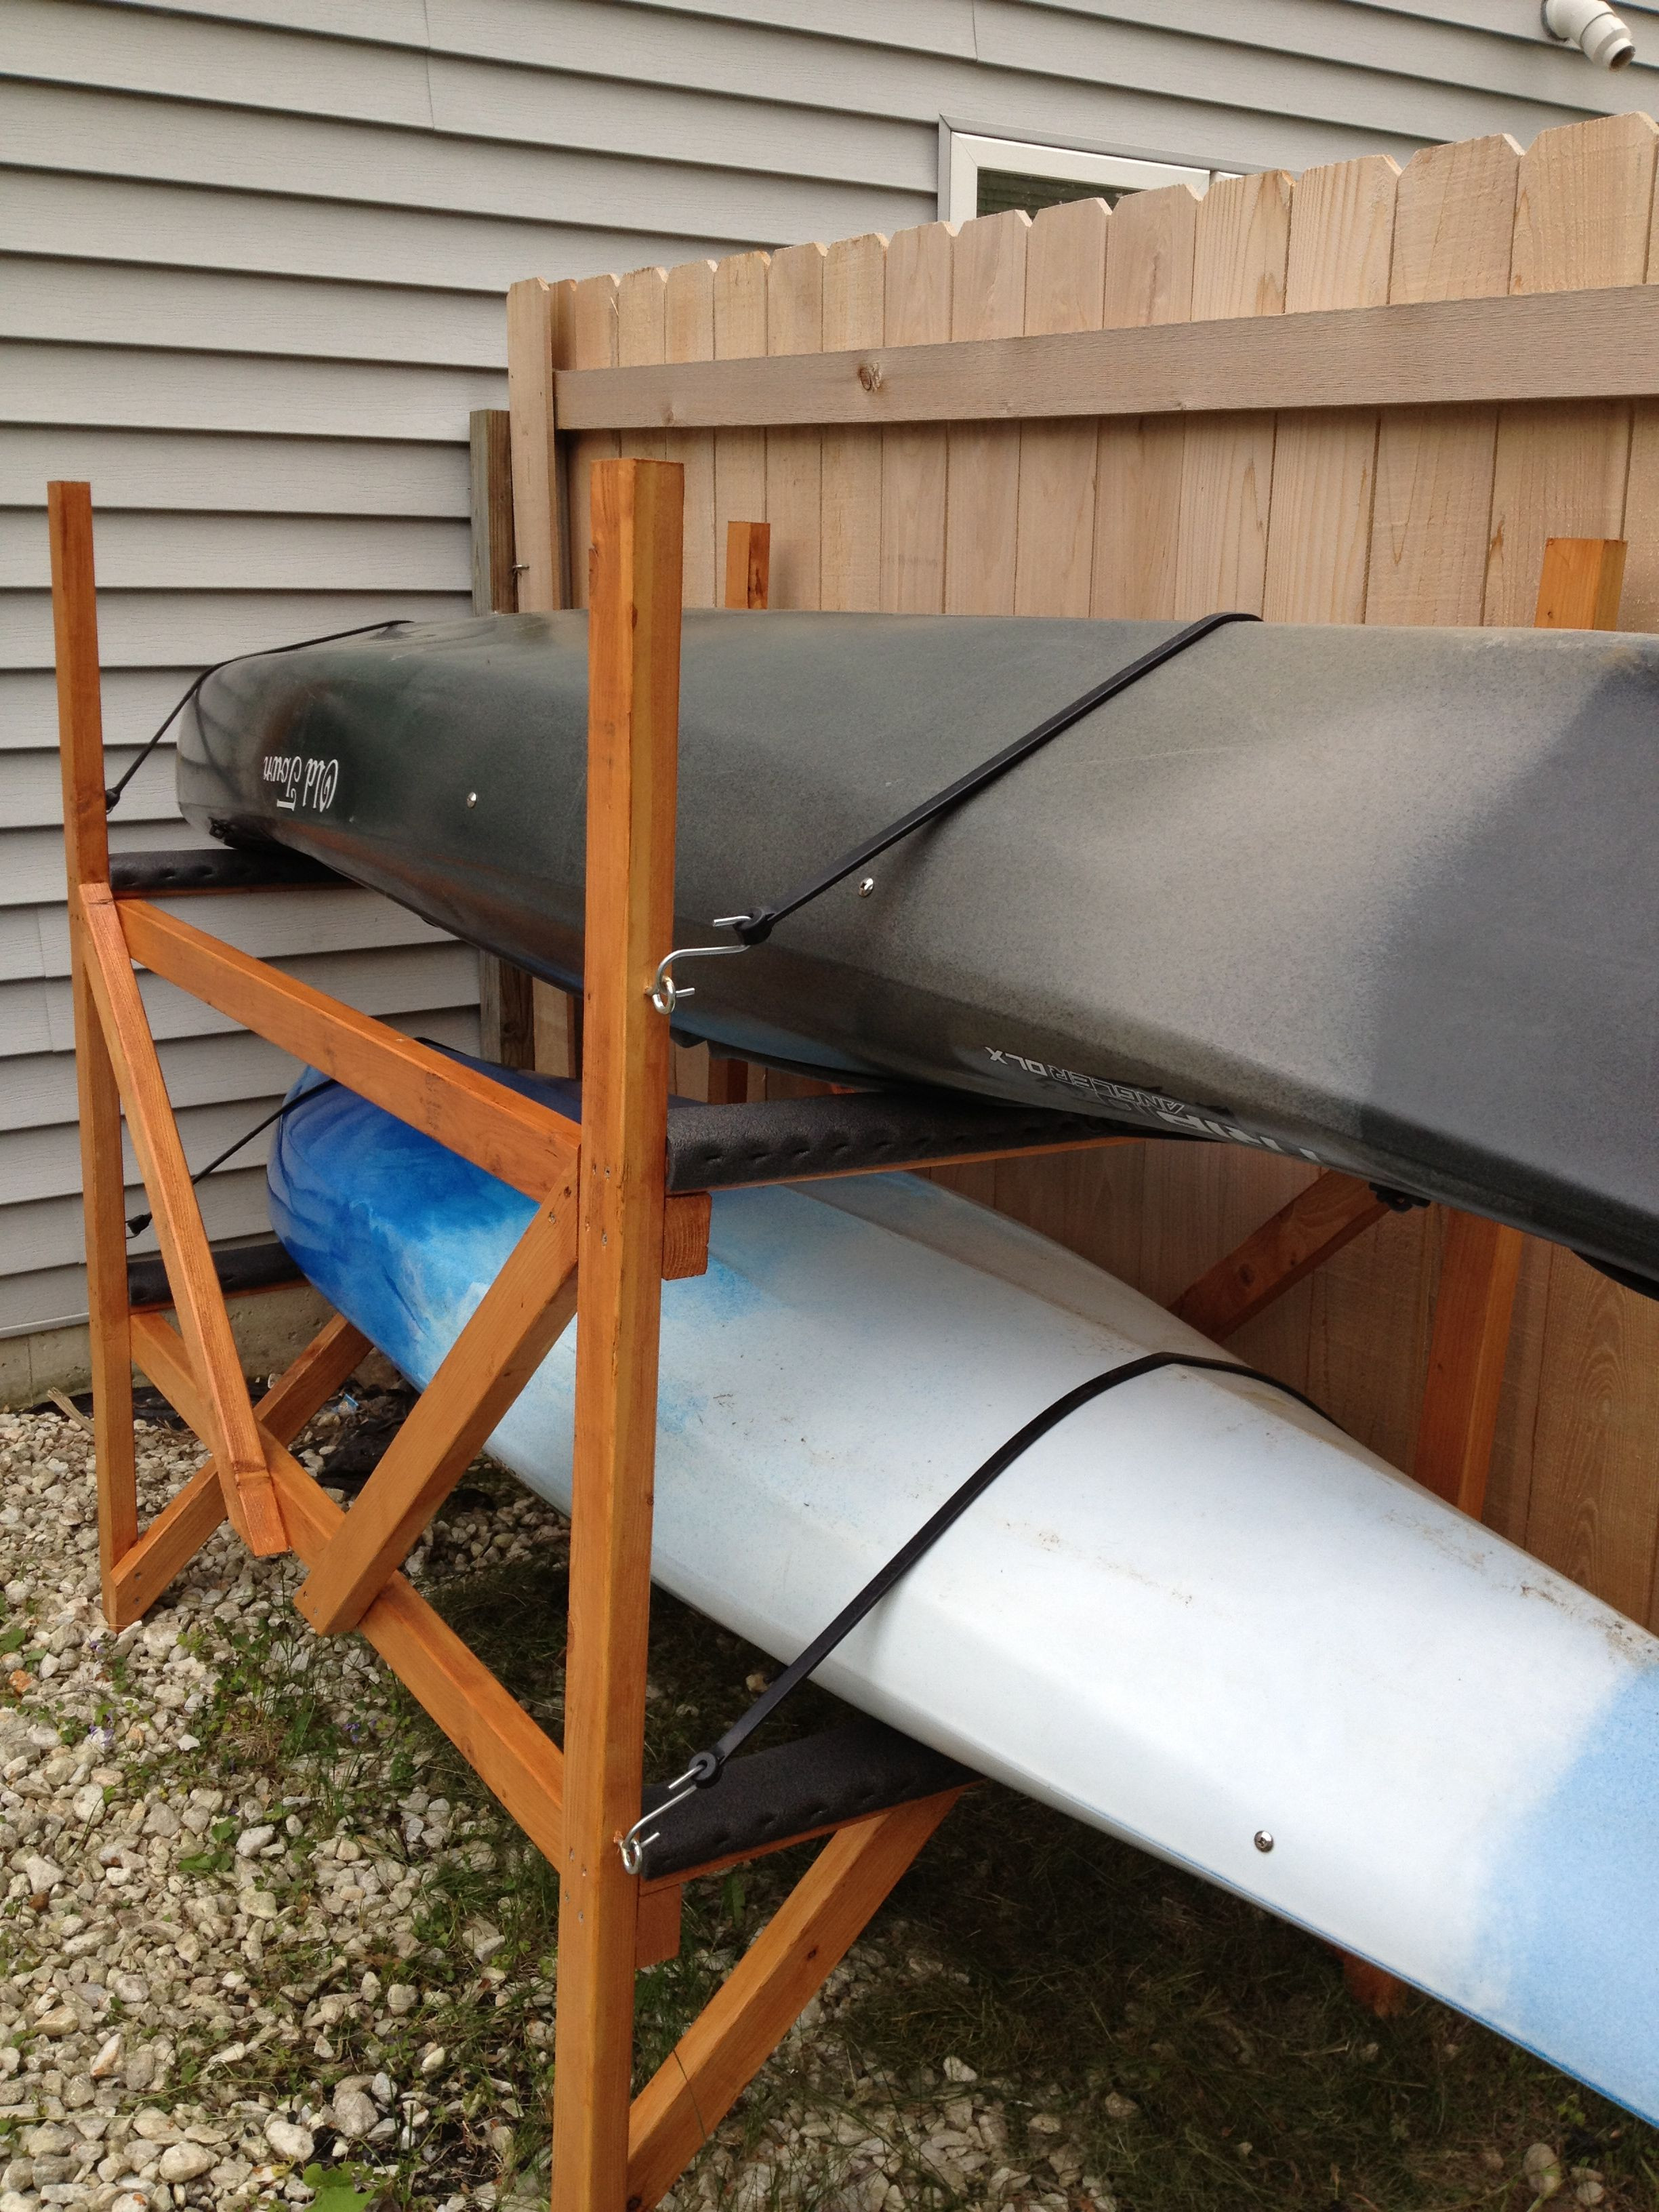 Best ideas about DIY Kayak Storage Racks
. Save or Pin DIY Kayak Rack Kayaks & Canoes Pinterest Now.